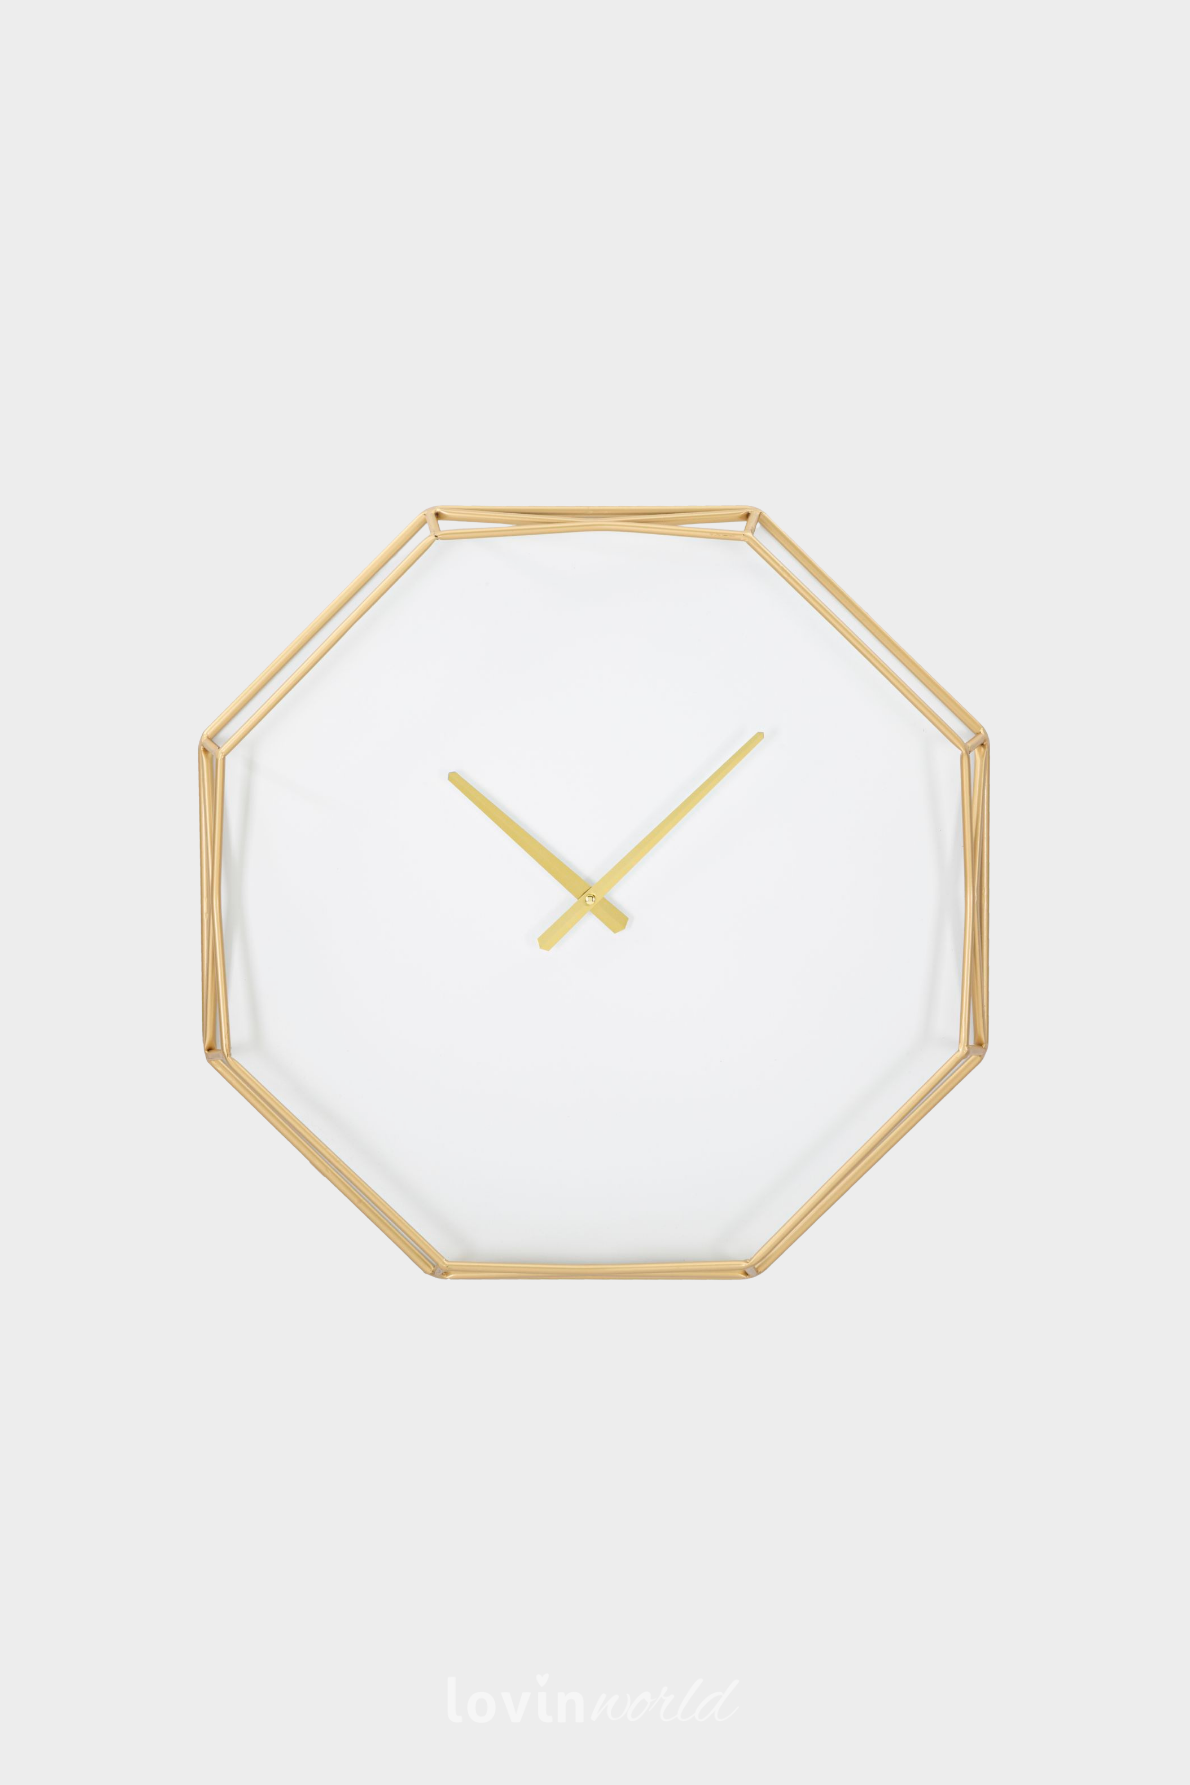 Orologio da muro Goldy Octagonal, 56x56 cm.-1